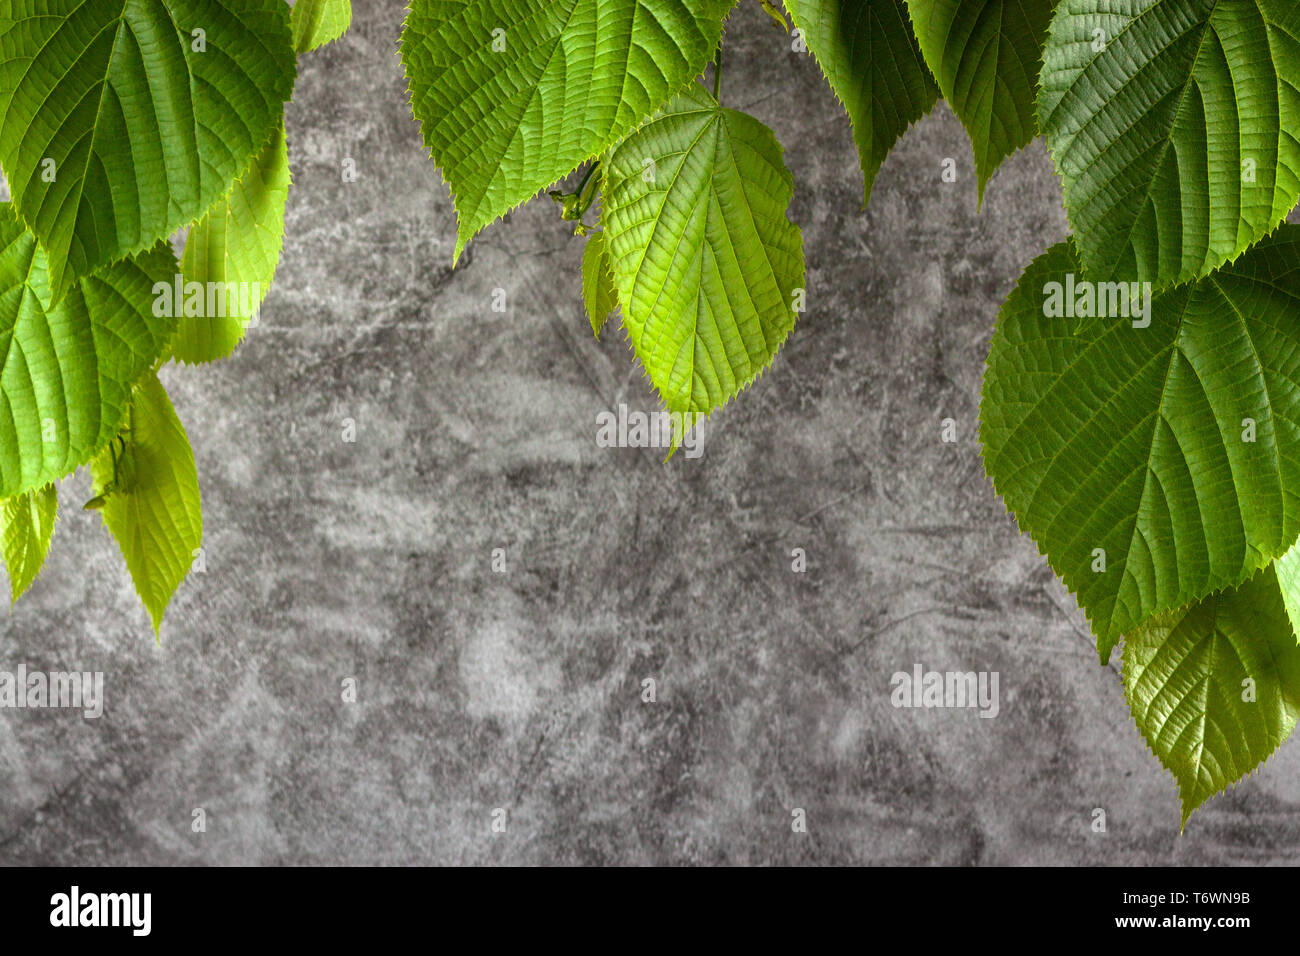 Les jeunes feuilles vertes de Linden sur un arrière-plan en marbre gris Banque D'Images